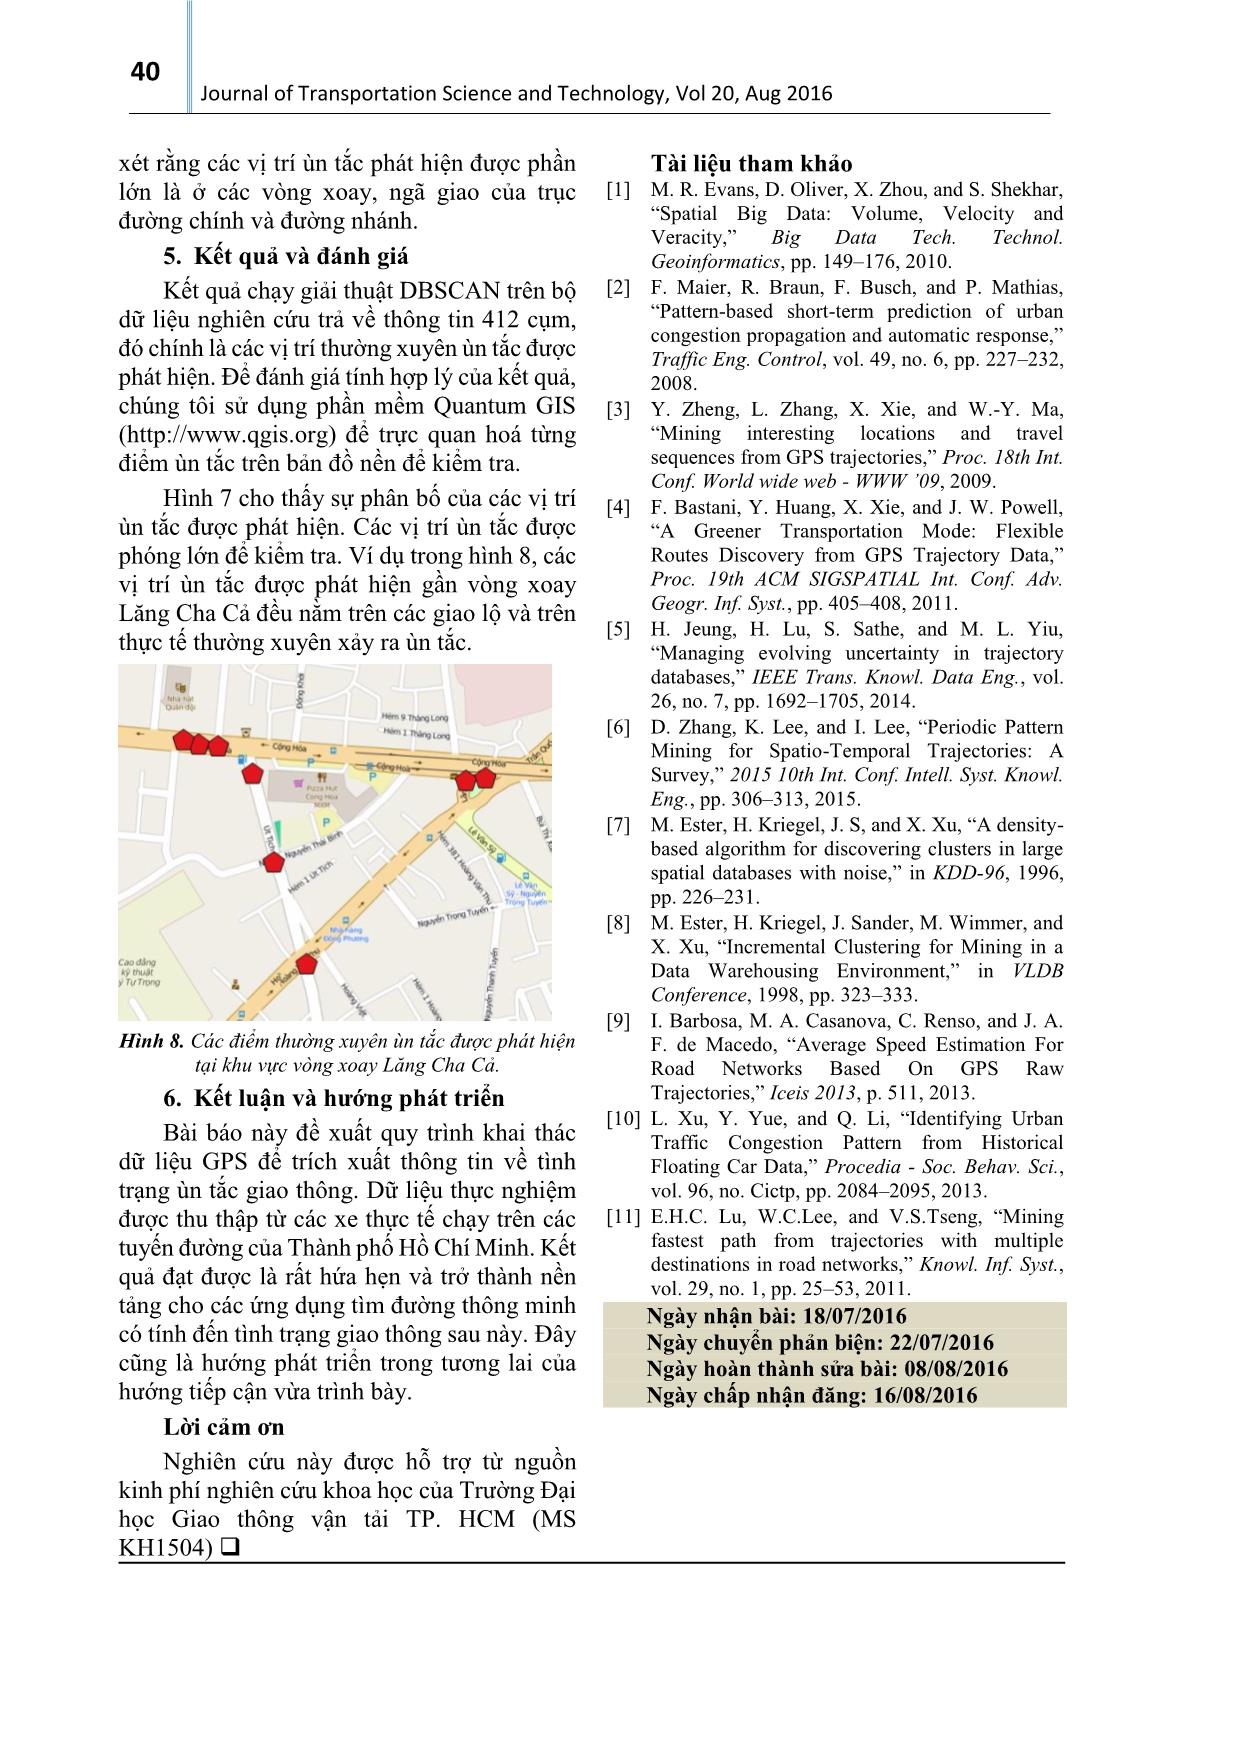 Khai thác thông tin tình trạng ùn tắc giao thông từ dữ liệu GPS - Trường hợp thành phố Hồ Chí Minh trang 5